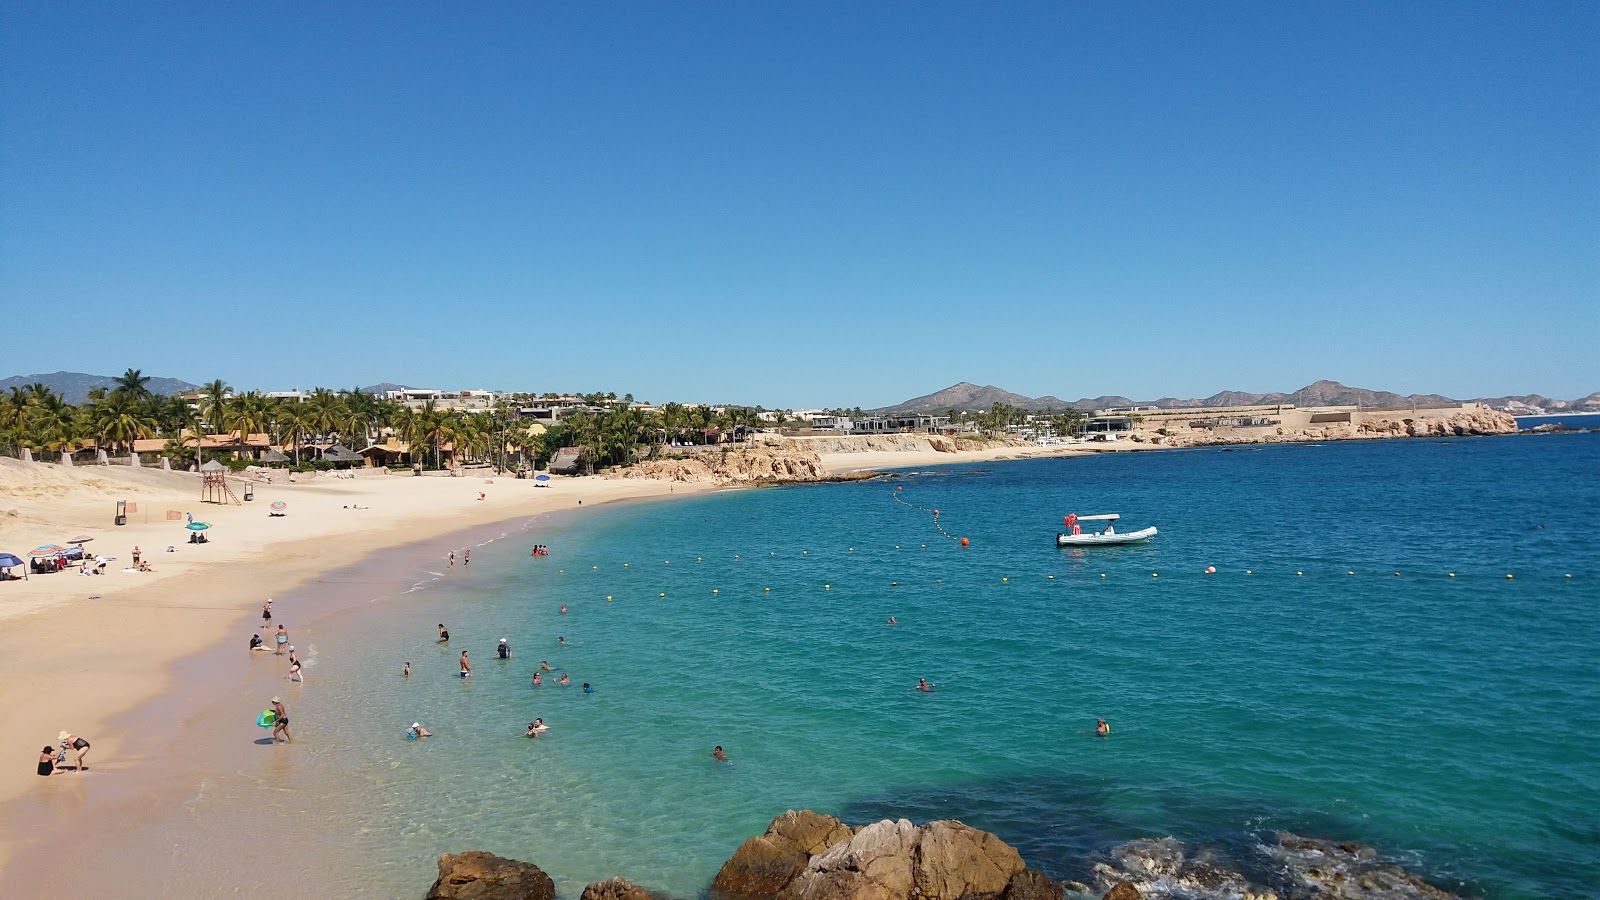 Playa el Chileno'in fotoğrafı orta koylar ile birlikte